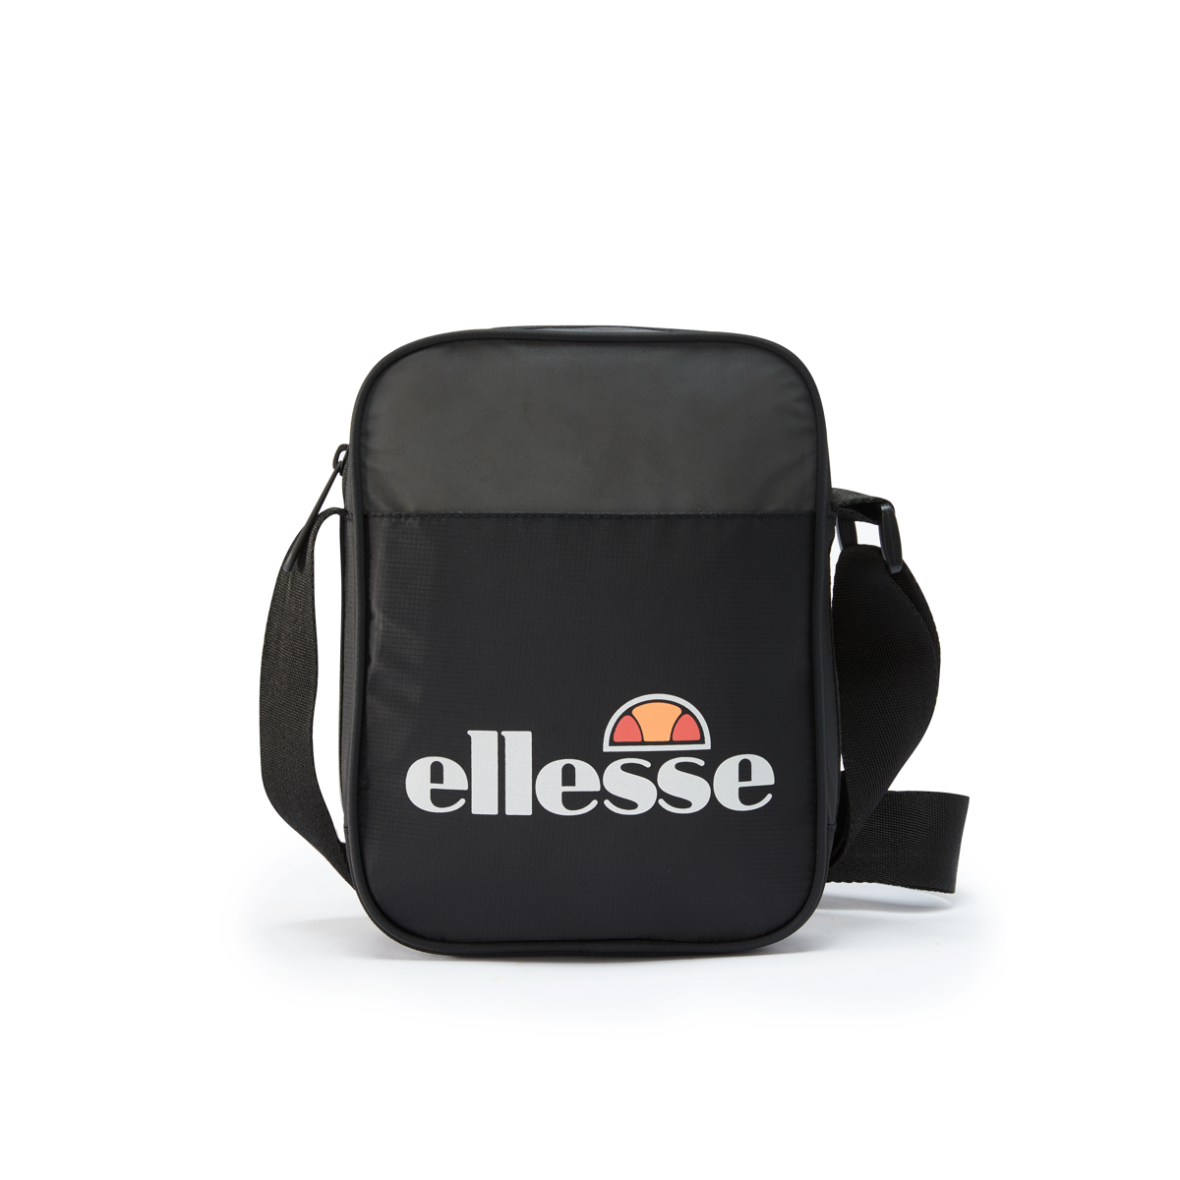 Ahler Ellesse - Shop online